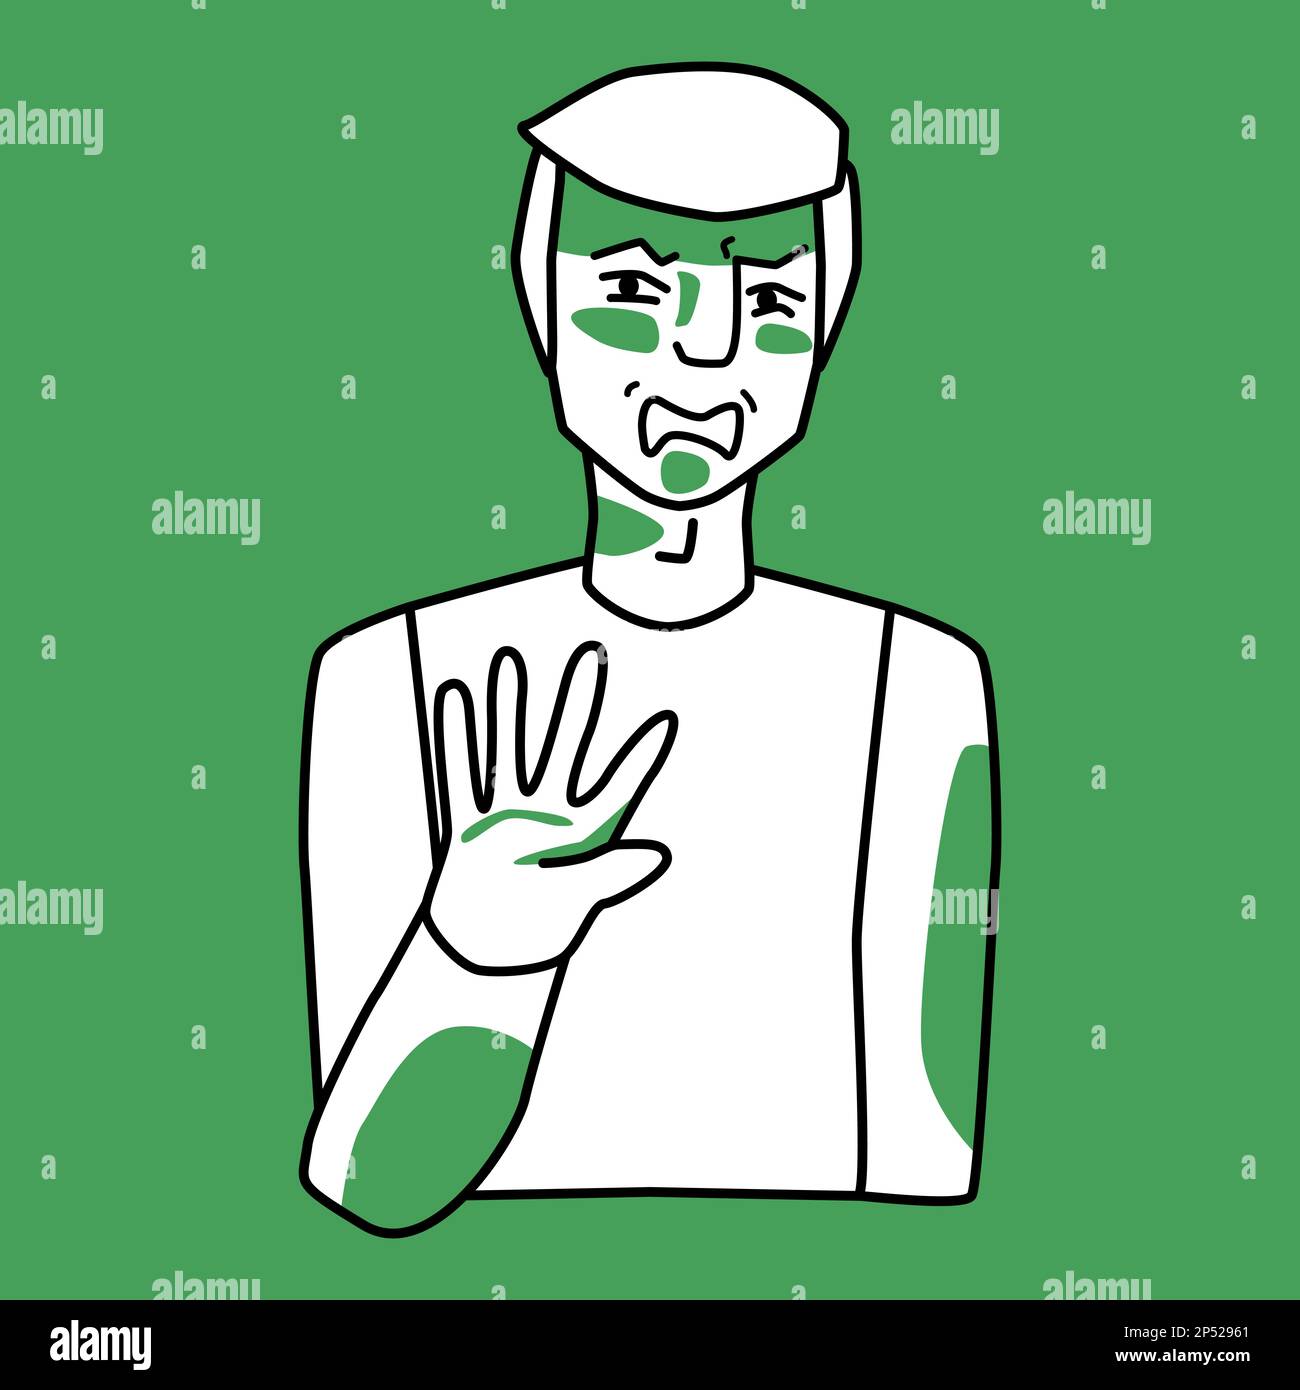 Maschio adulto con emozione di disgusto, verde e bianco. L'uomo con i capelli biondi si protegge con la mano. Disegno di linea disegno di stile di schizzo disegnato a mano, metà Illustrazione Vettoriale